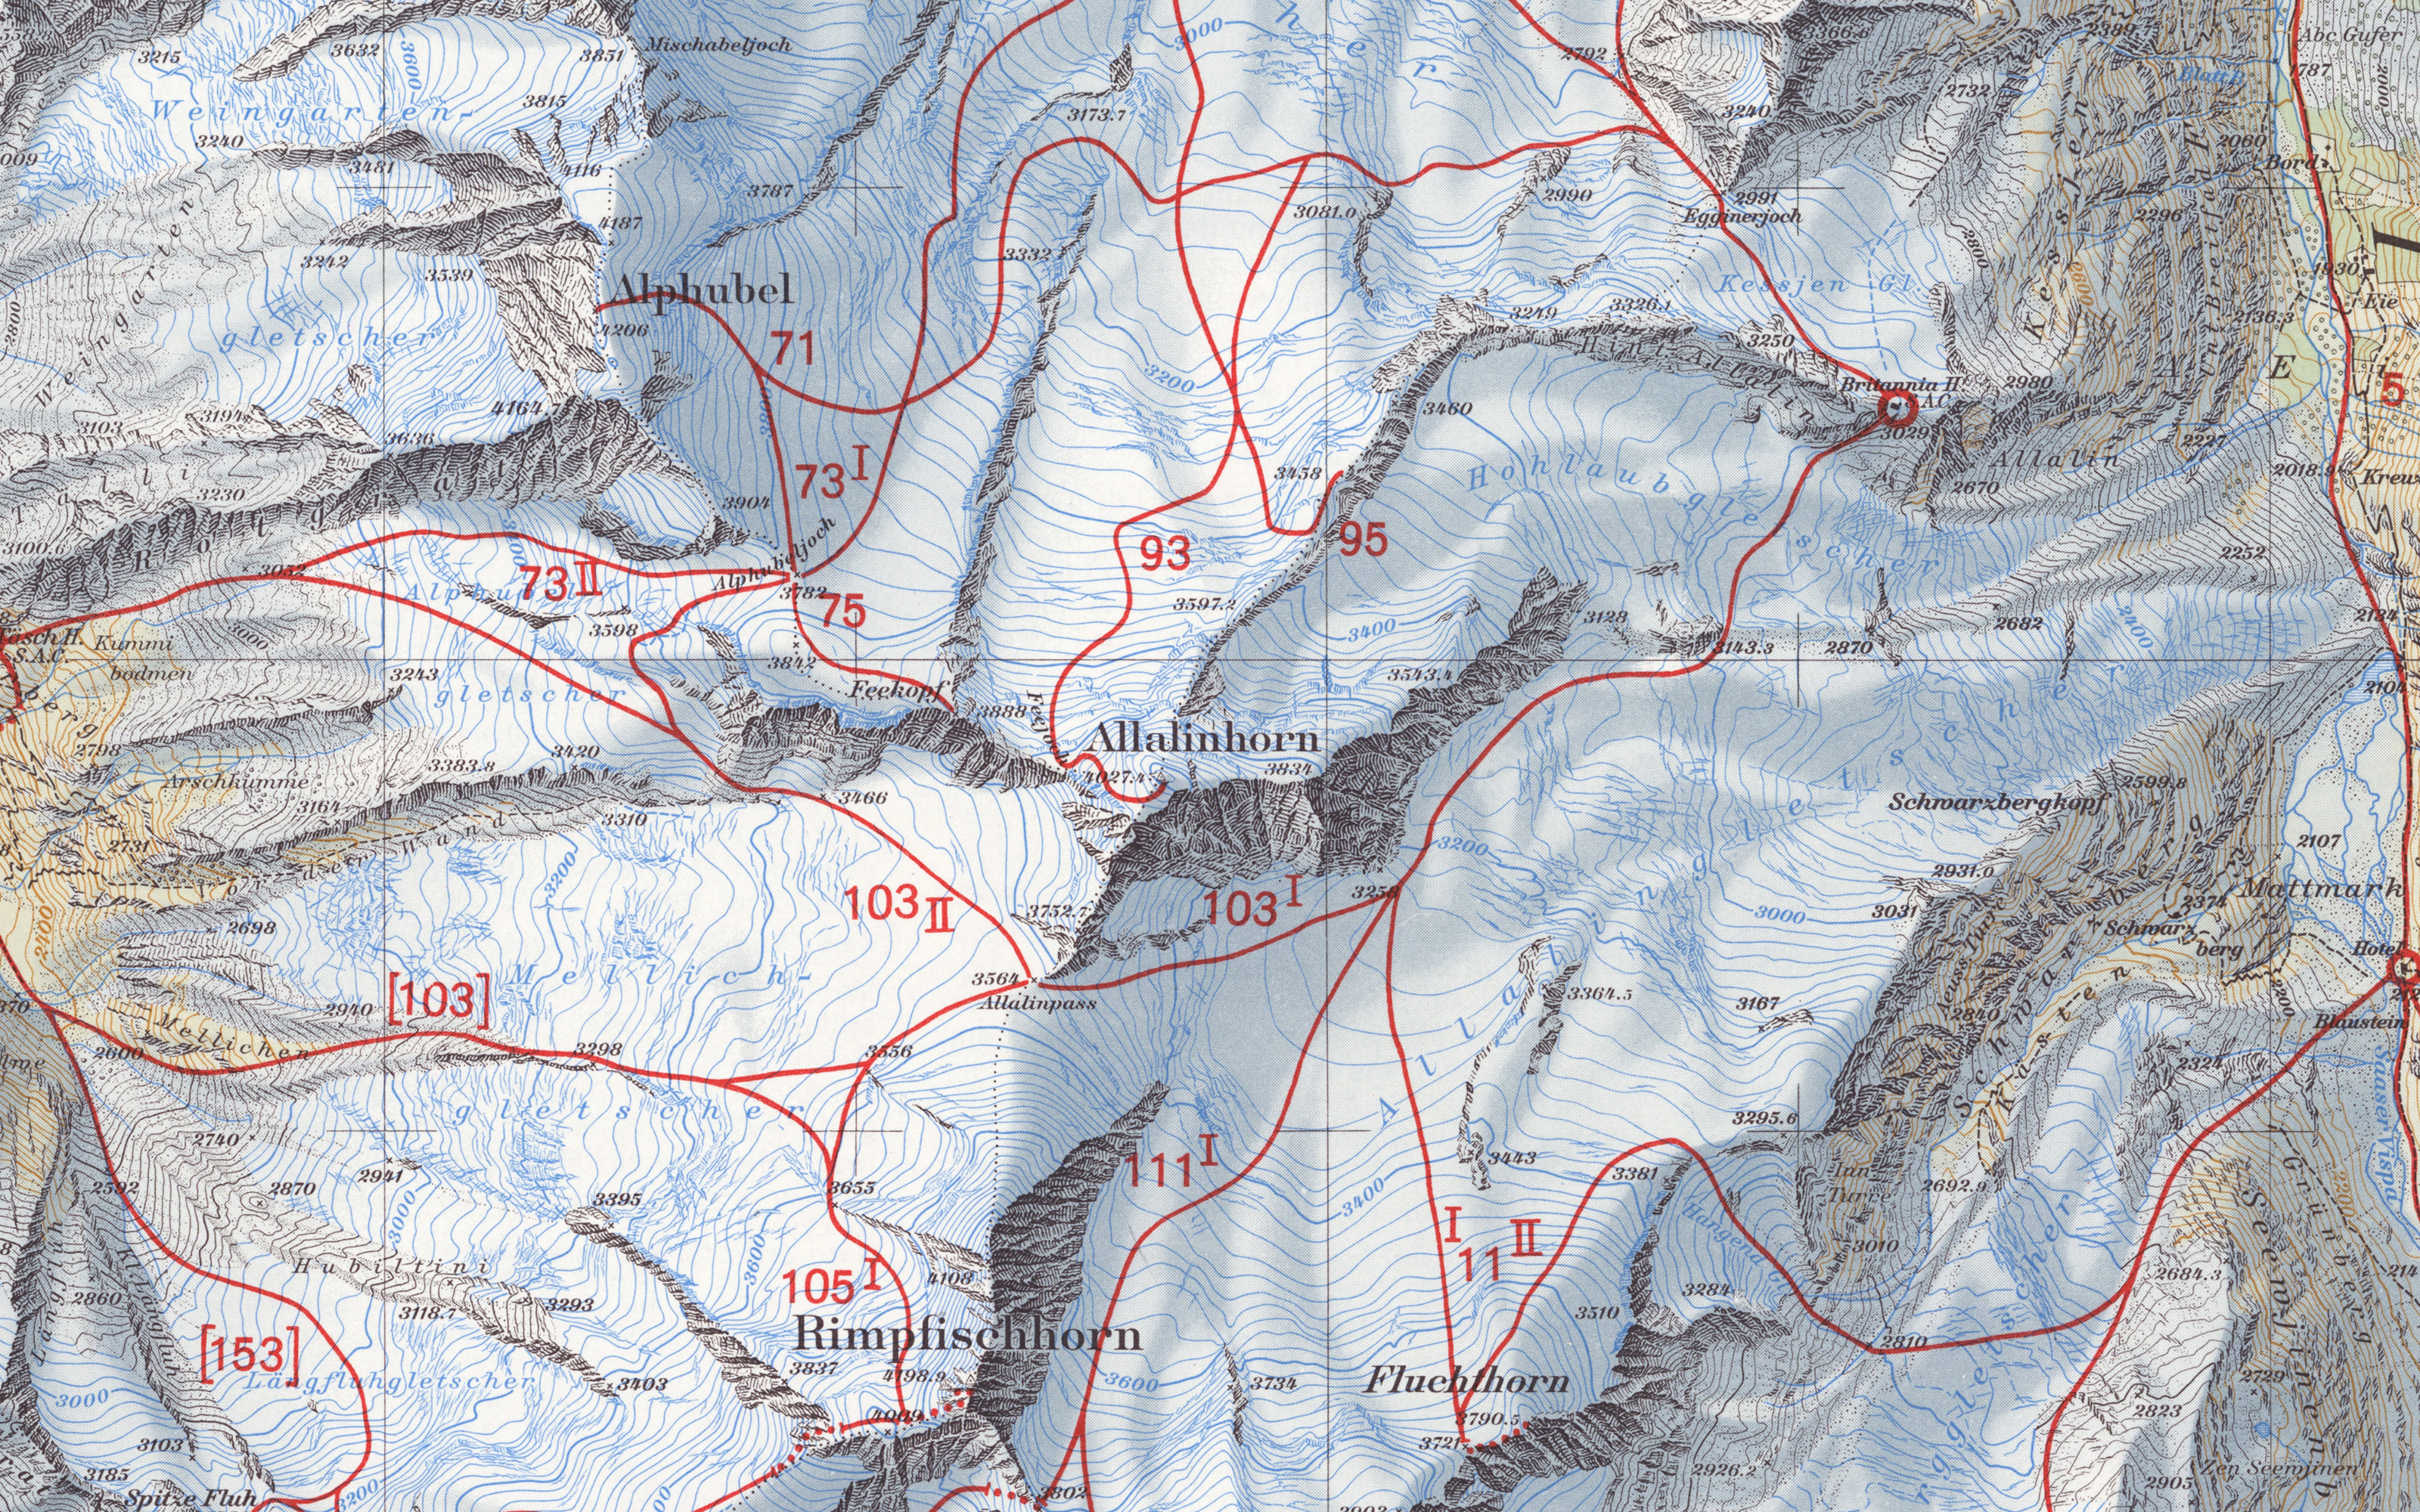 Extrait de la carte de randonnée à ski Mischabel de 1956. Les itinéraires à ski sont indiqués par des lignes rouges et pourvus de numéros.